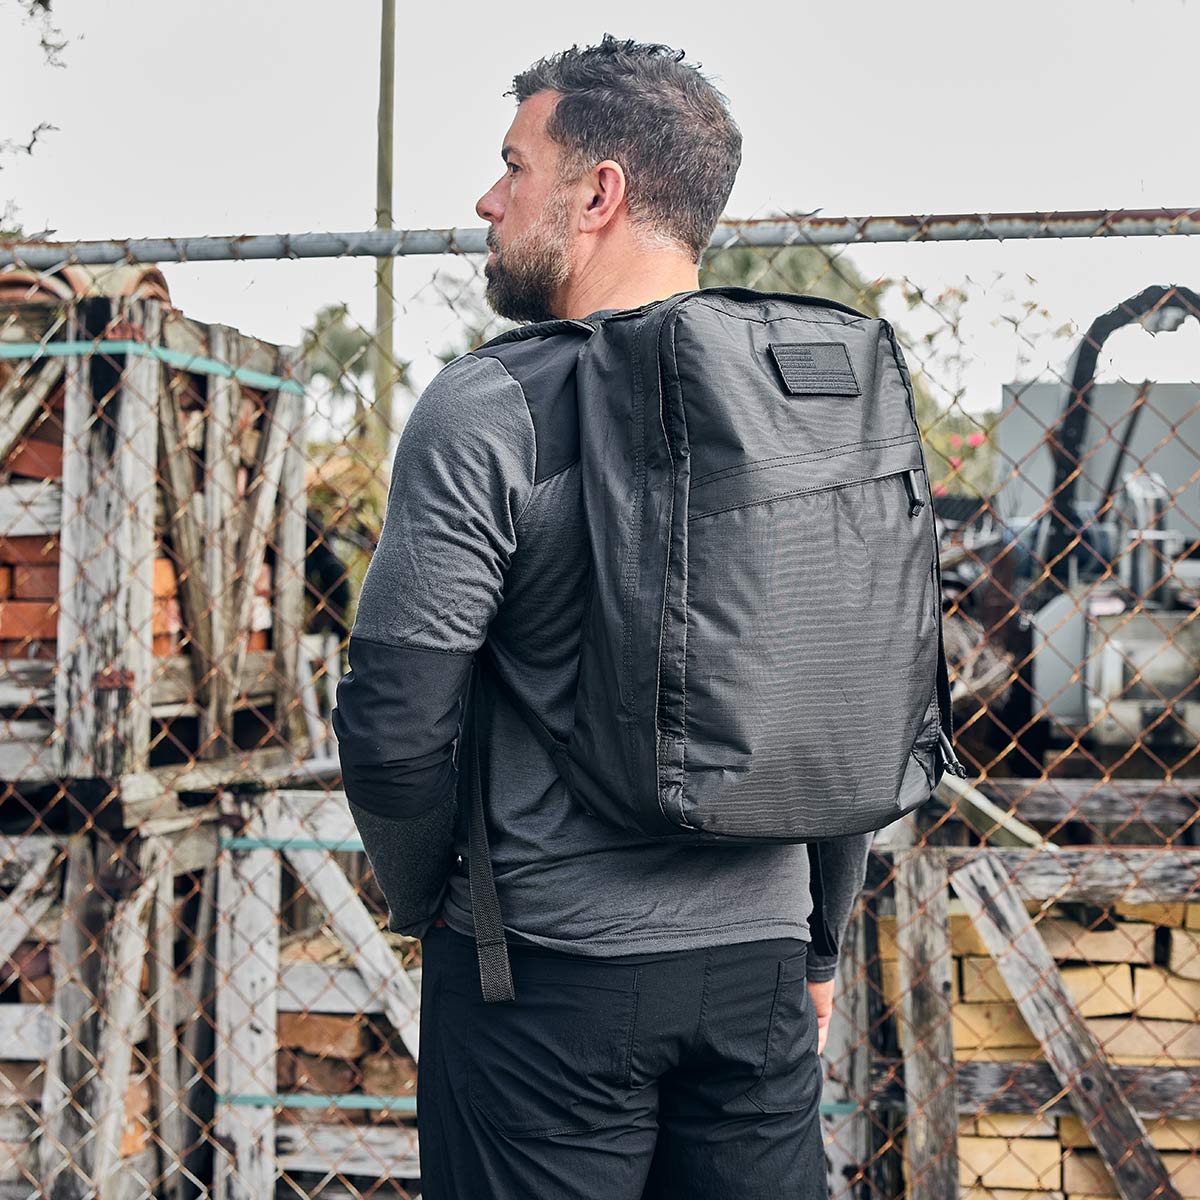 Review: GORUCK GR1 Backpack – The Run Commuter